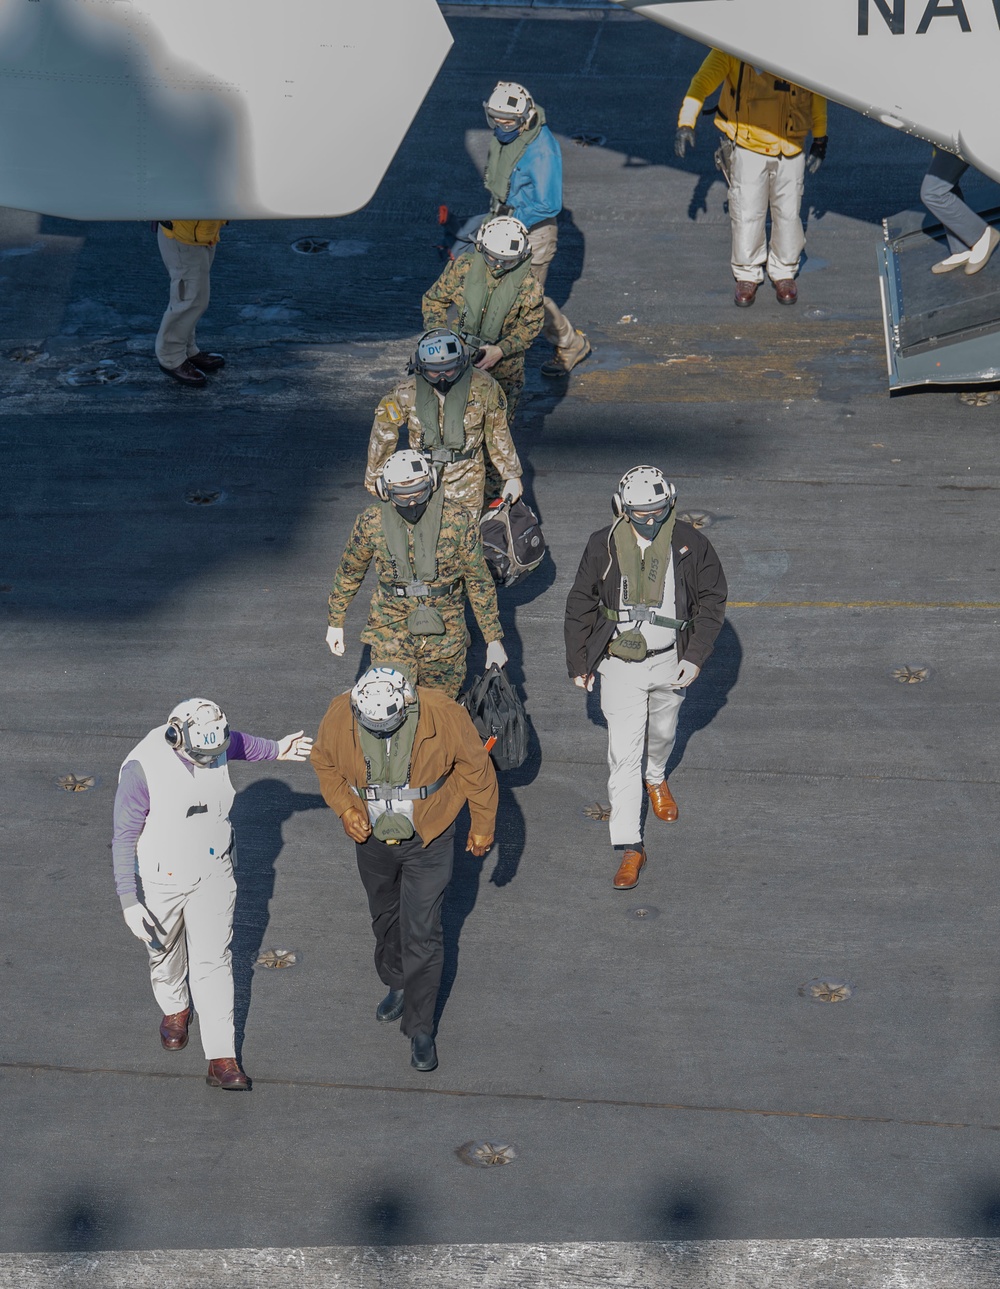 SECDEF Visits USS Nimitz